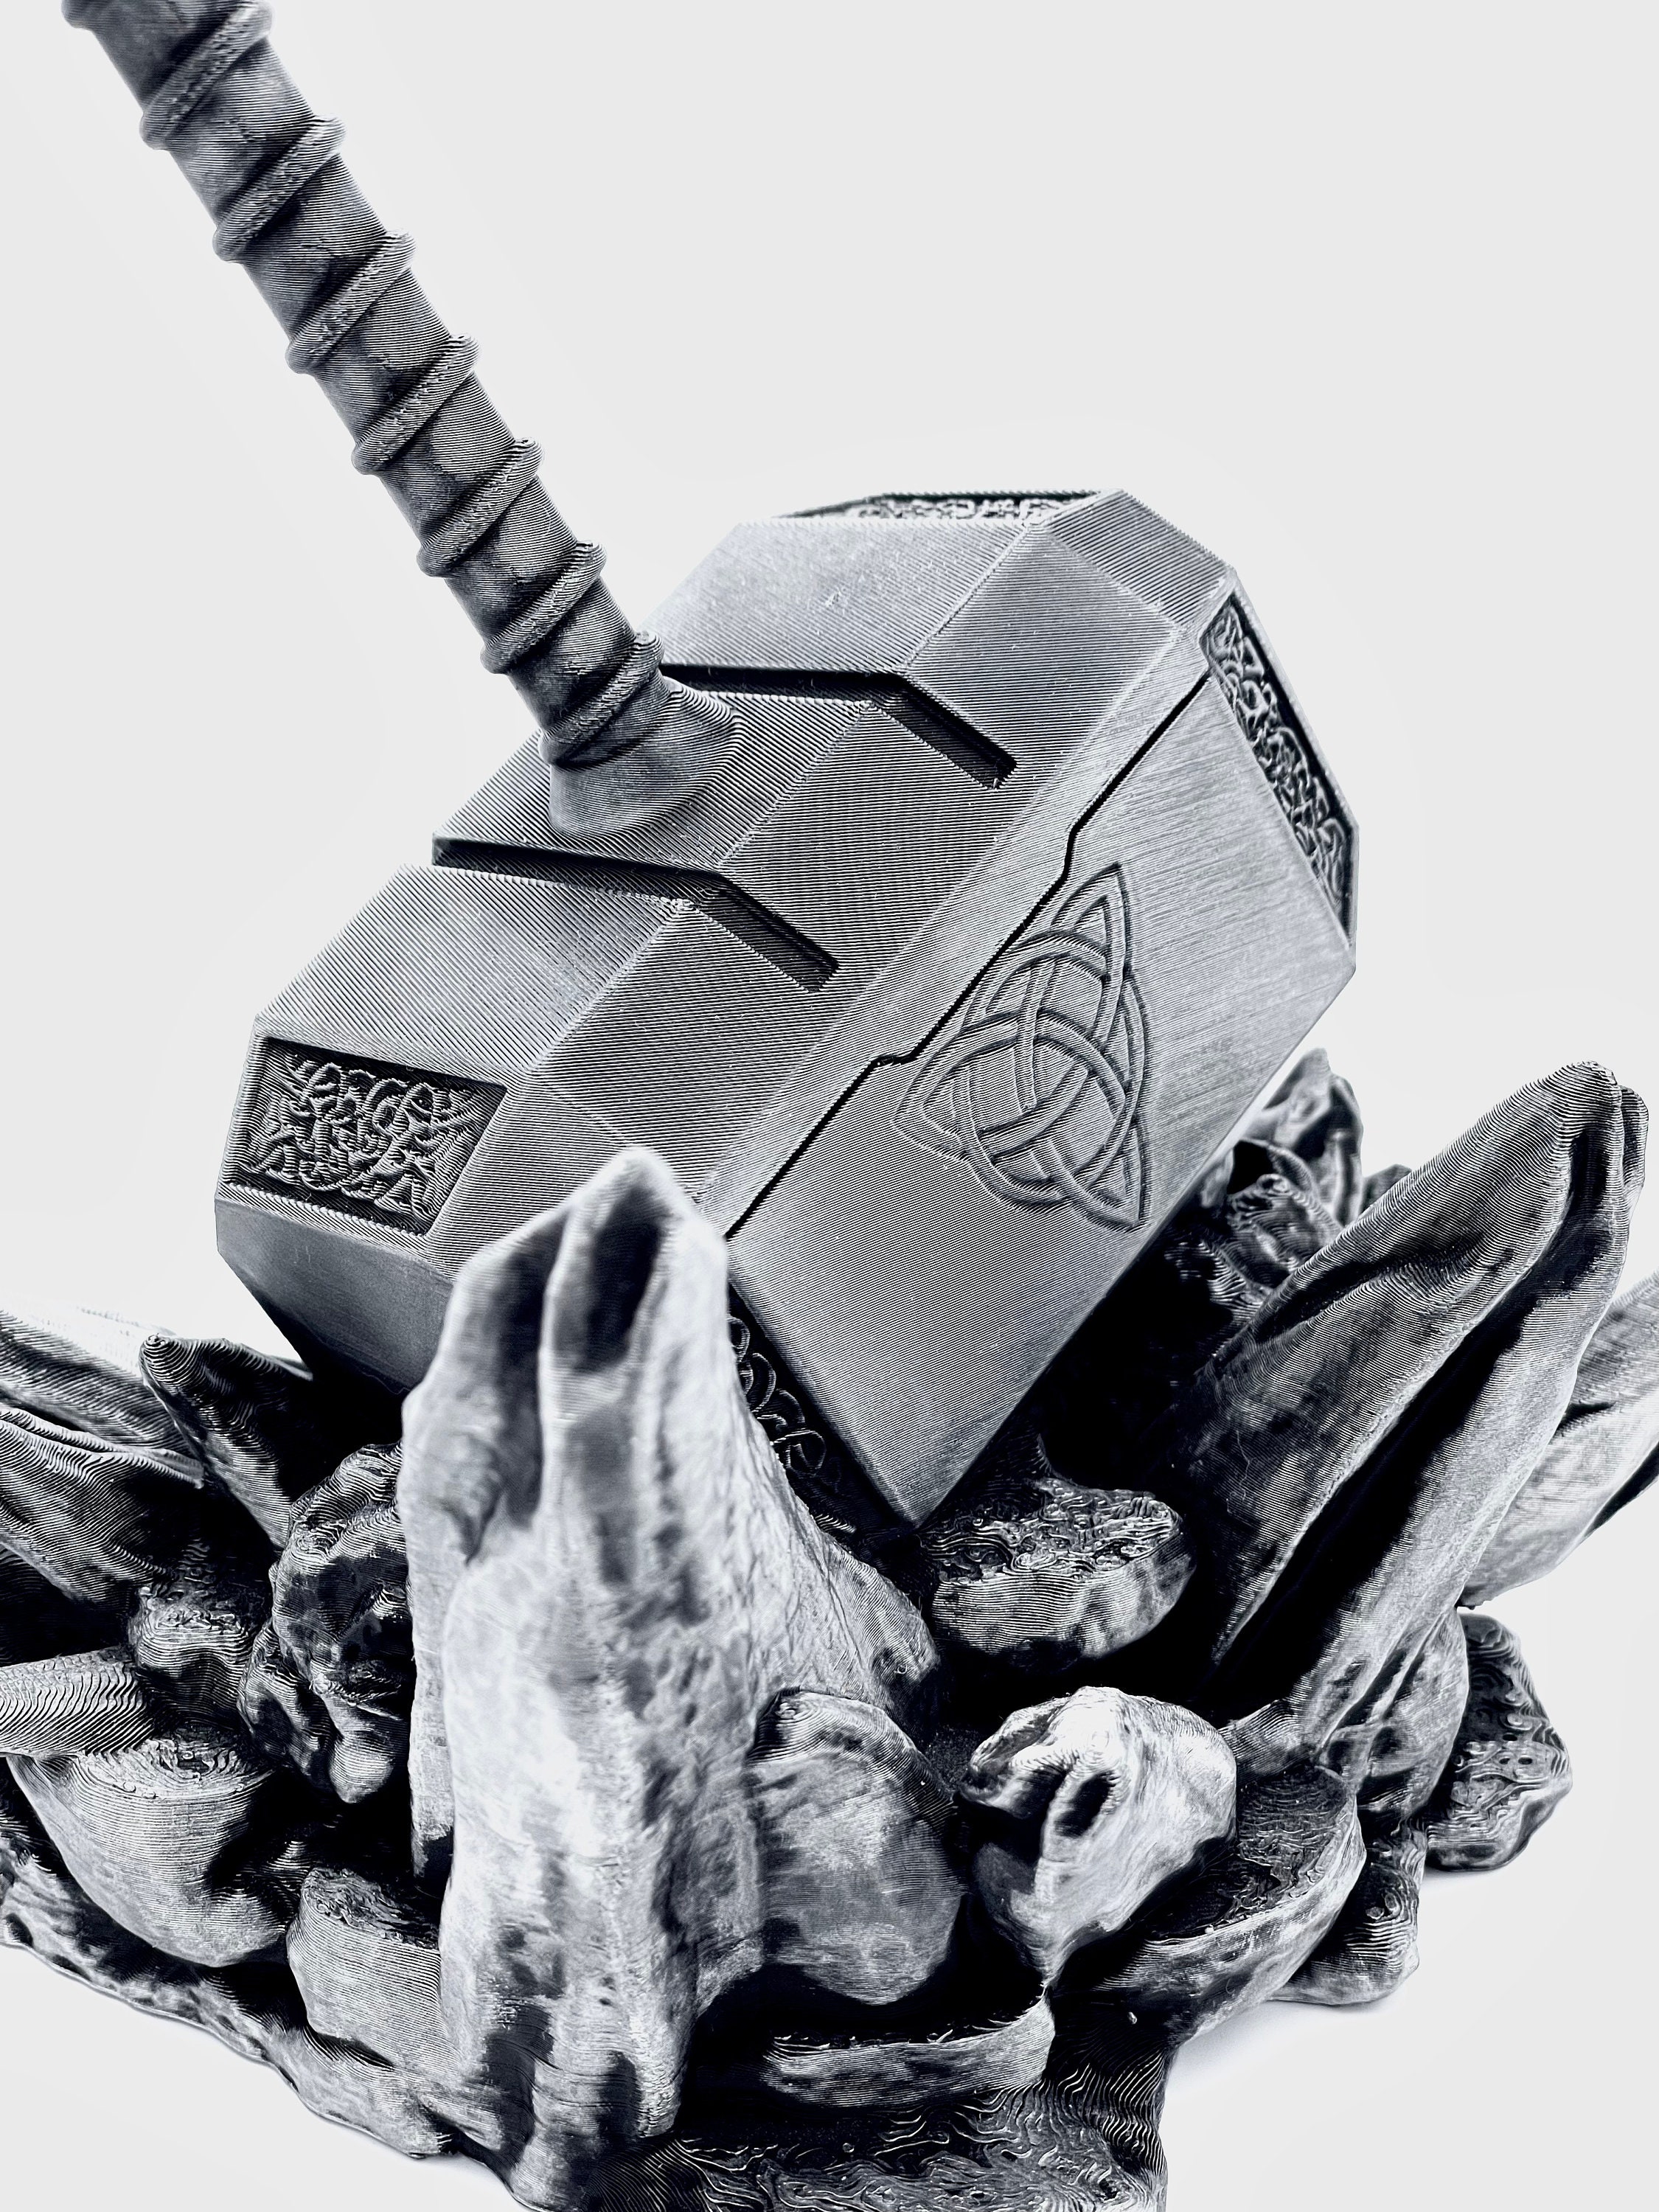 Confinement : Marvel lance un défi aux fans pour réaliser le marteau de Thor